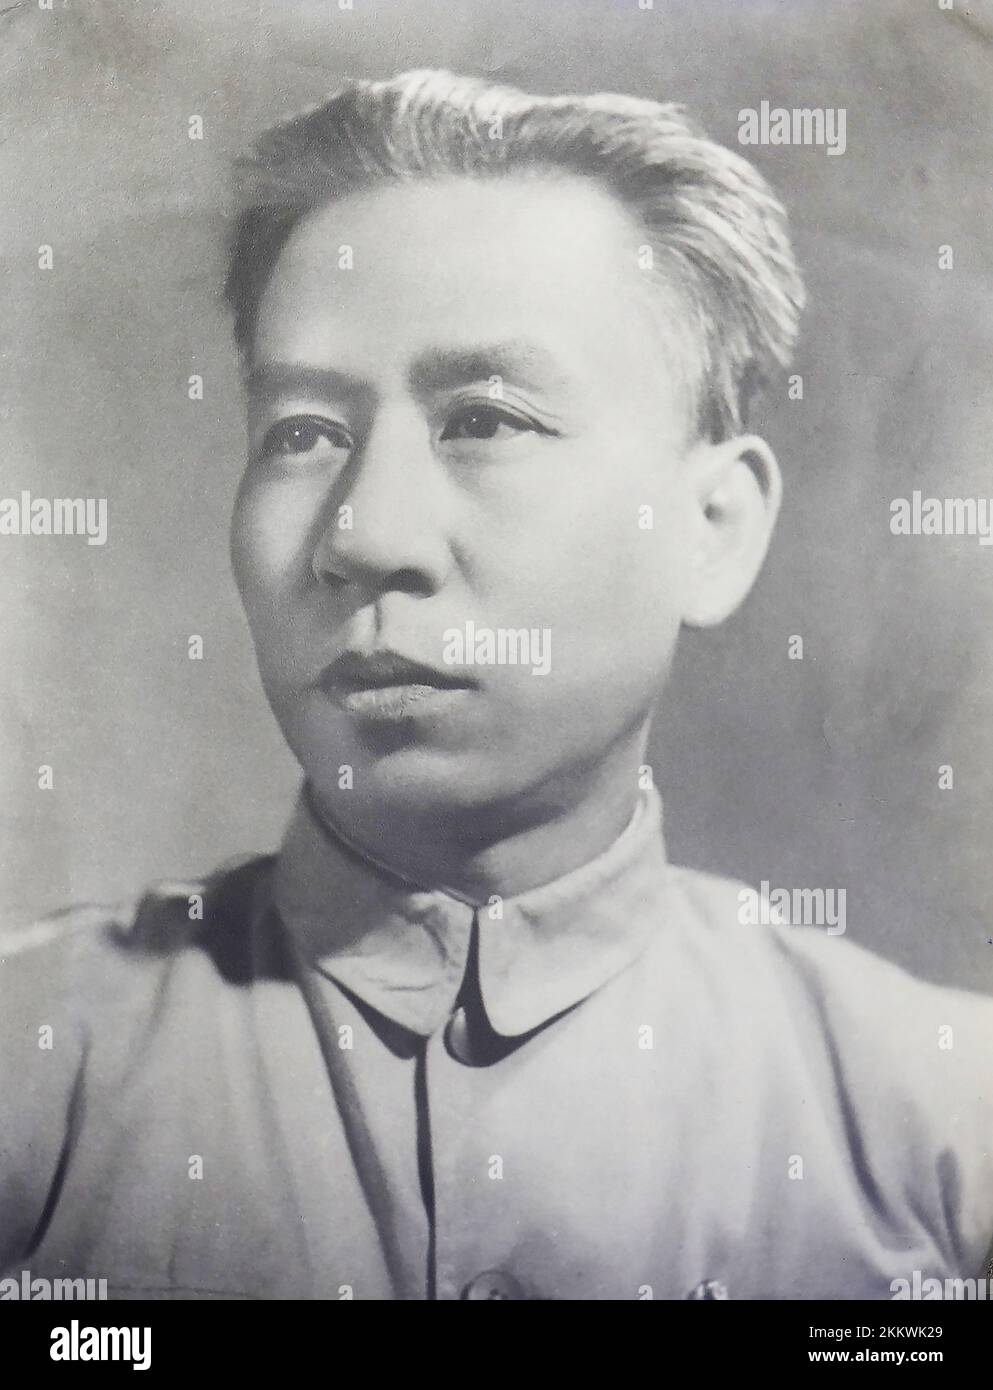 Liu Shaoqi (1898-1969) war ein chinesischer Revolutionär, Politiker und Theoretiker. Er war von 1954 bis 1959 Vorsitzender des Ständigen Ausschusses für den NPC, von 1956 bis 1966 erster stellvertretender Vorsitzender der Kommunistischen Partei Chinas und von 1959 bis 1968 Vorsitzender der Volksrepublik China, de jure Staatsoberhaupt, Während dieser Zeit führte er in China eine Politik des wirtschaftlichen Wiederaufbaus durch. Stockfoto